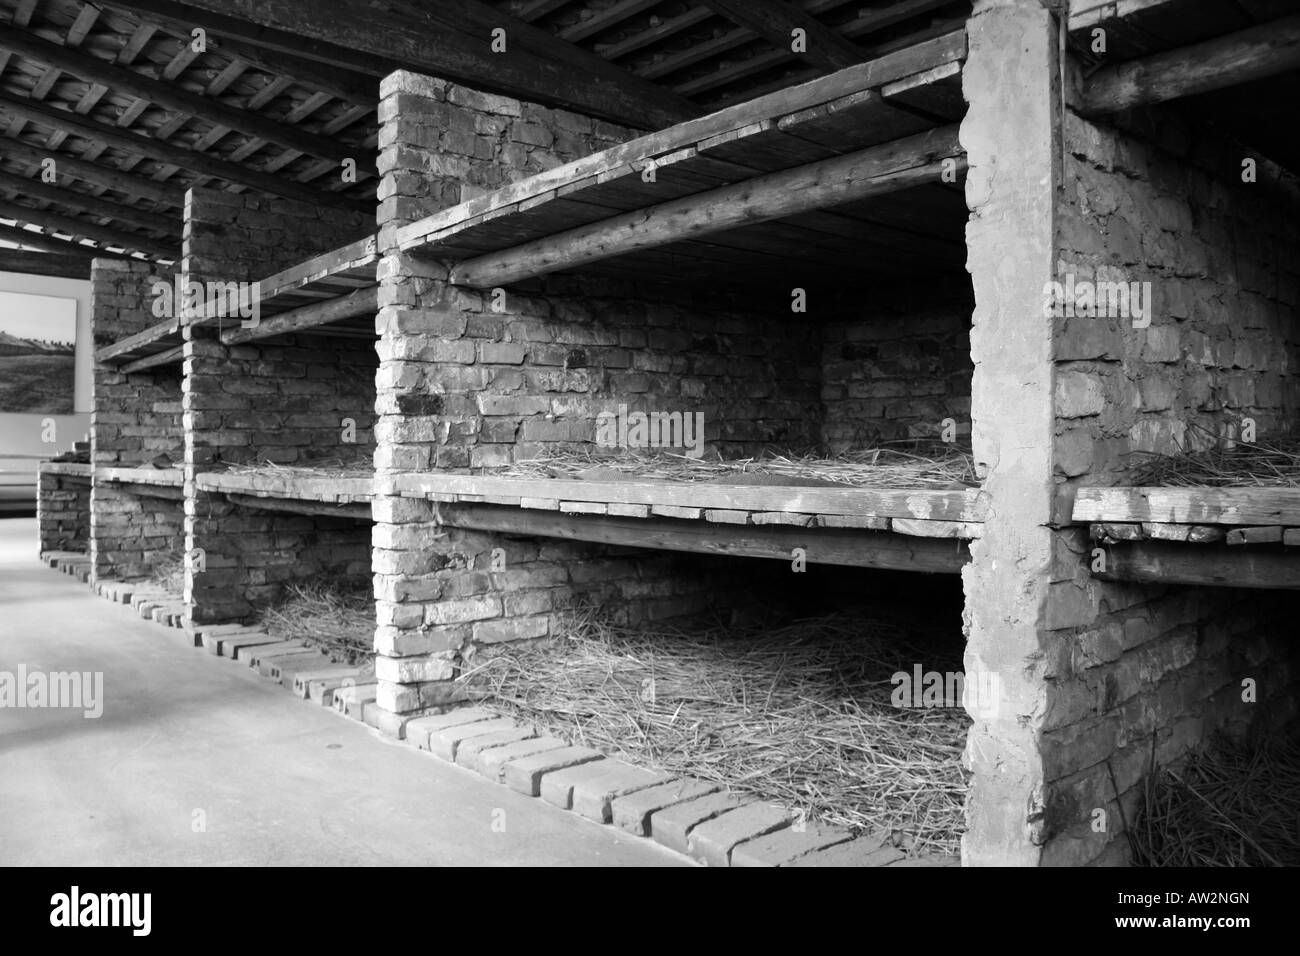 Un modèle d'une cabane en bois dans l'ancien camp de concentration Nazi à Auschwitz Birkenau, en Pologne. Banque D'Images